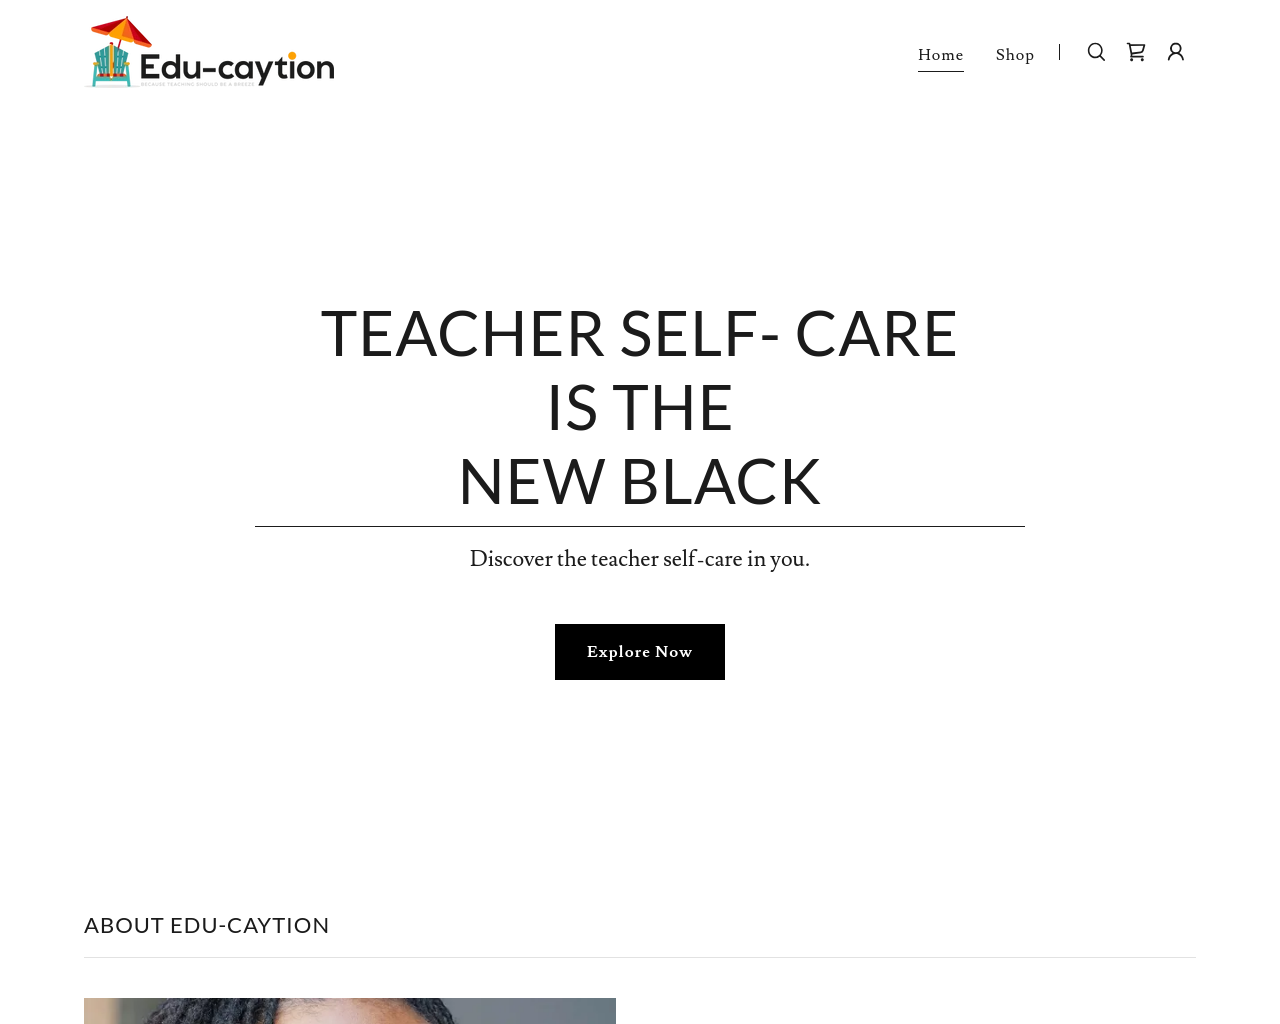 educaytion.com